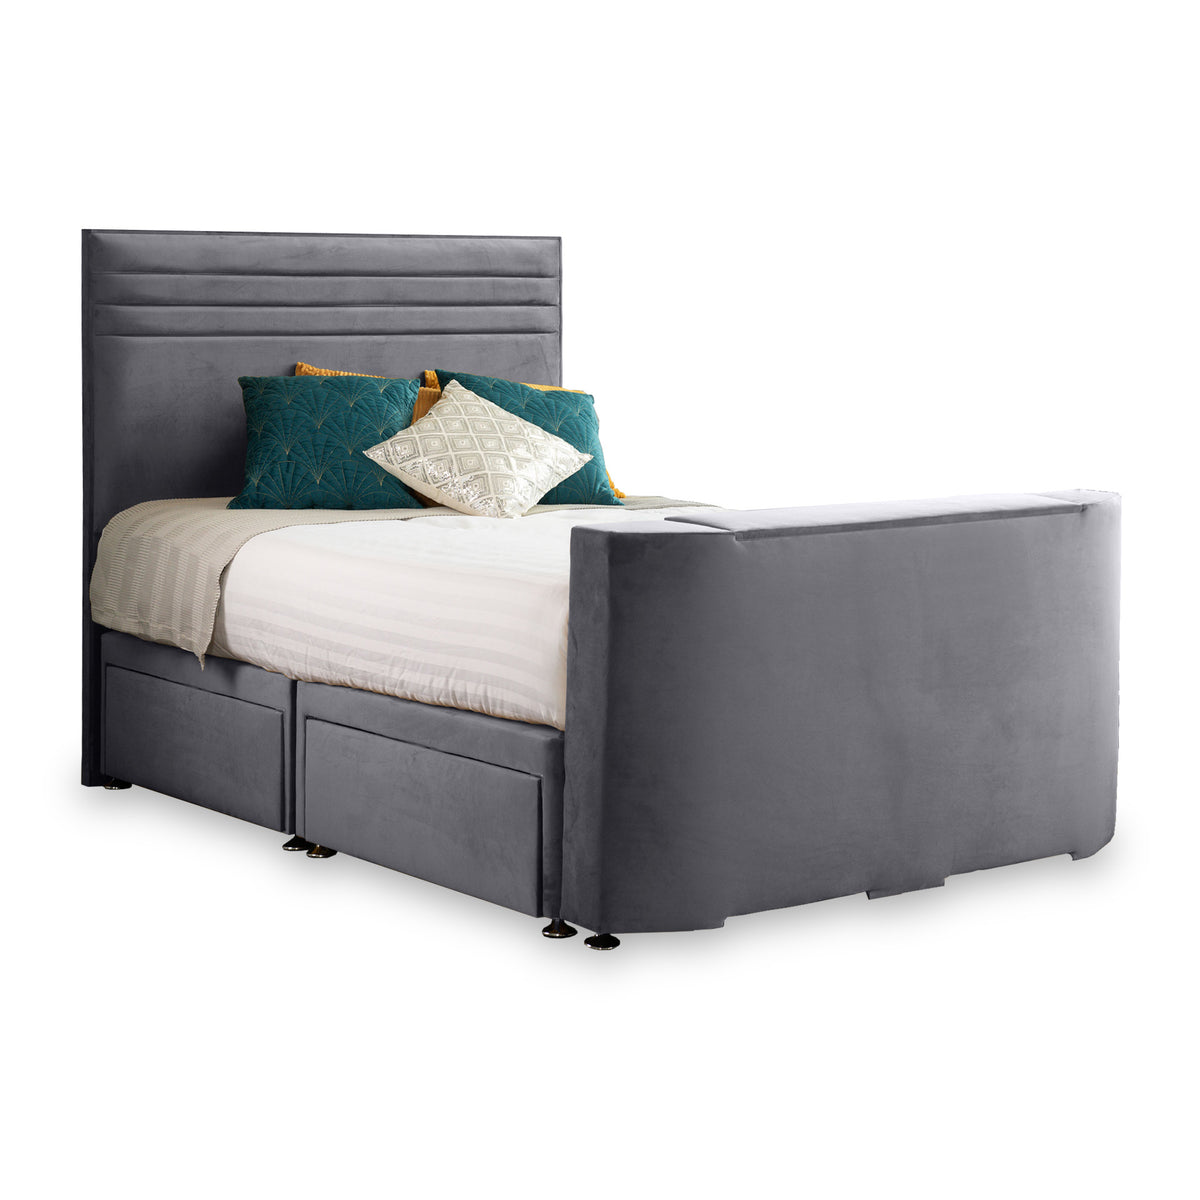 Ryton Velvet 4 Drawer TV Bed in Granite by Roseland Furniture